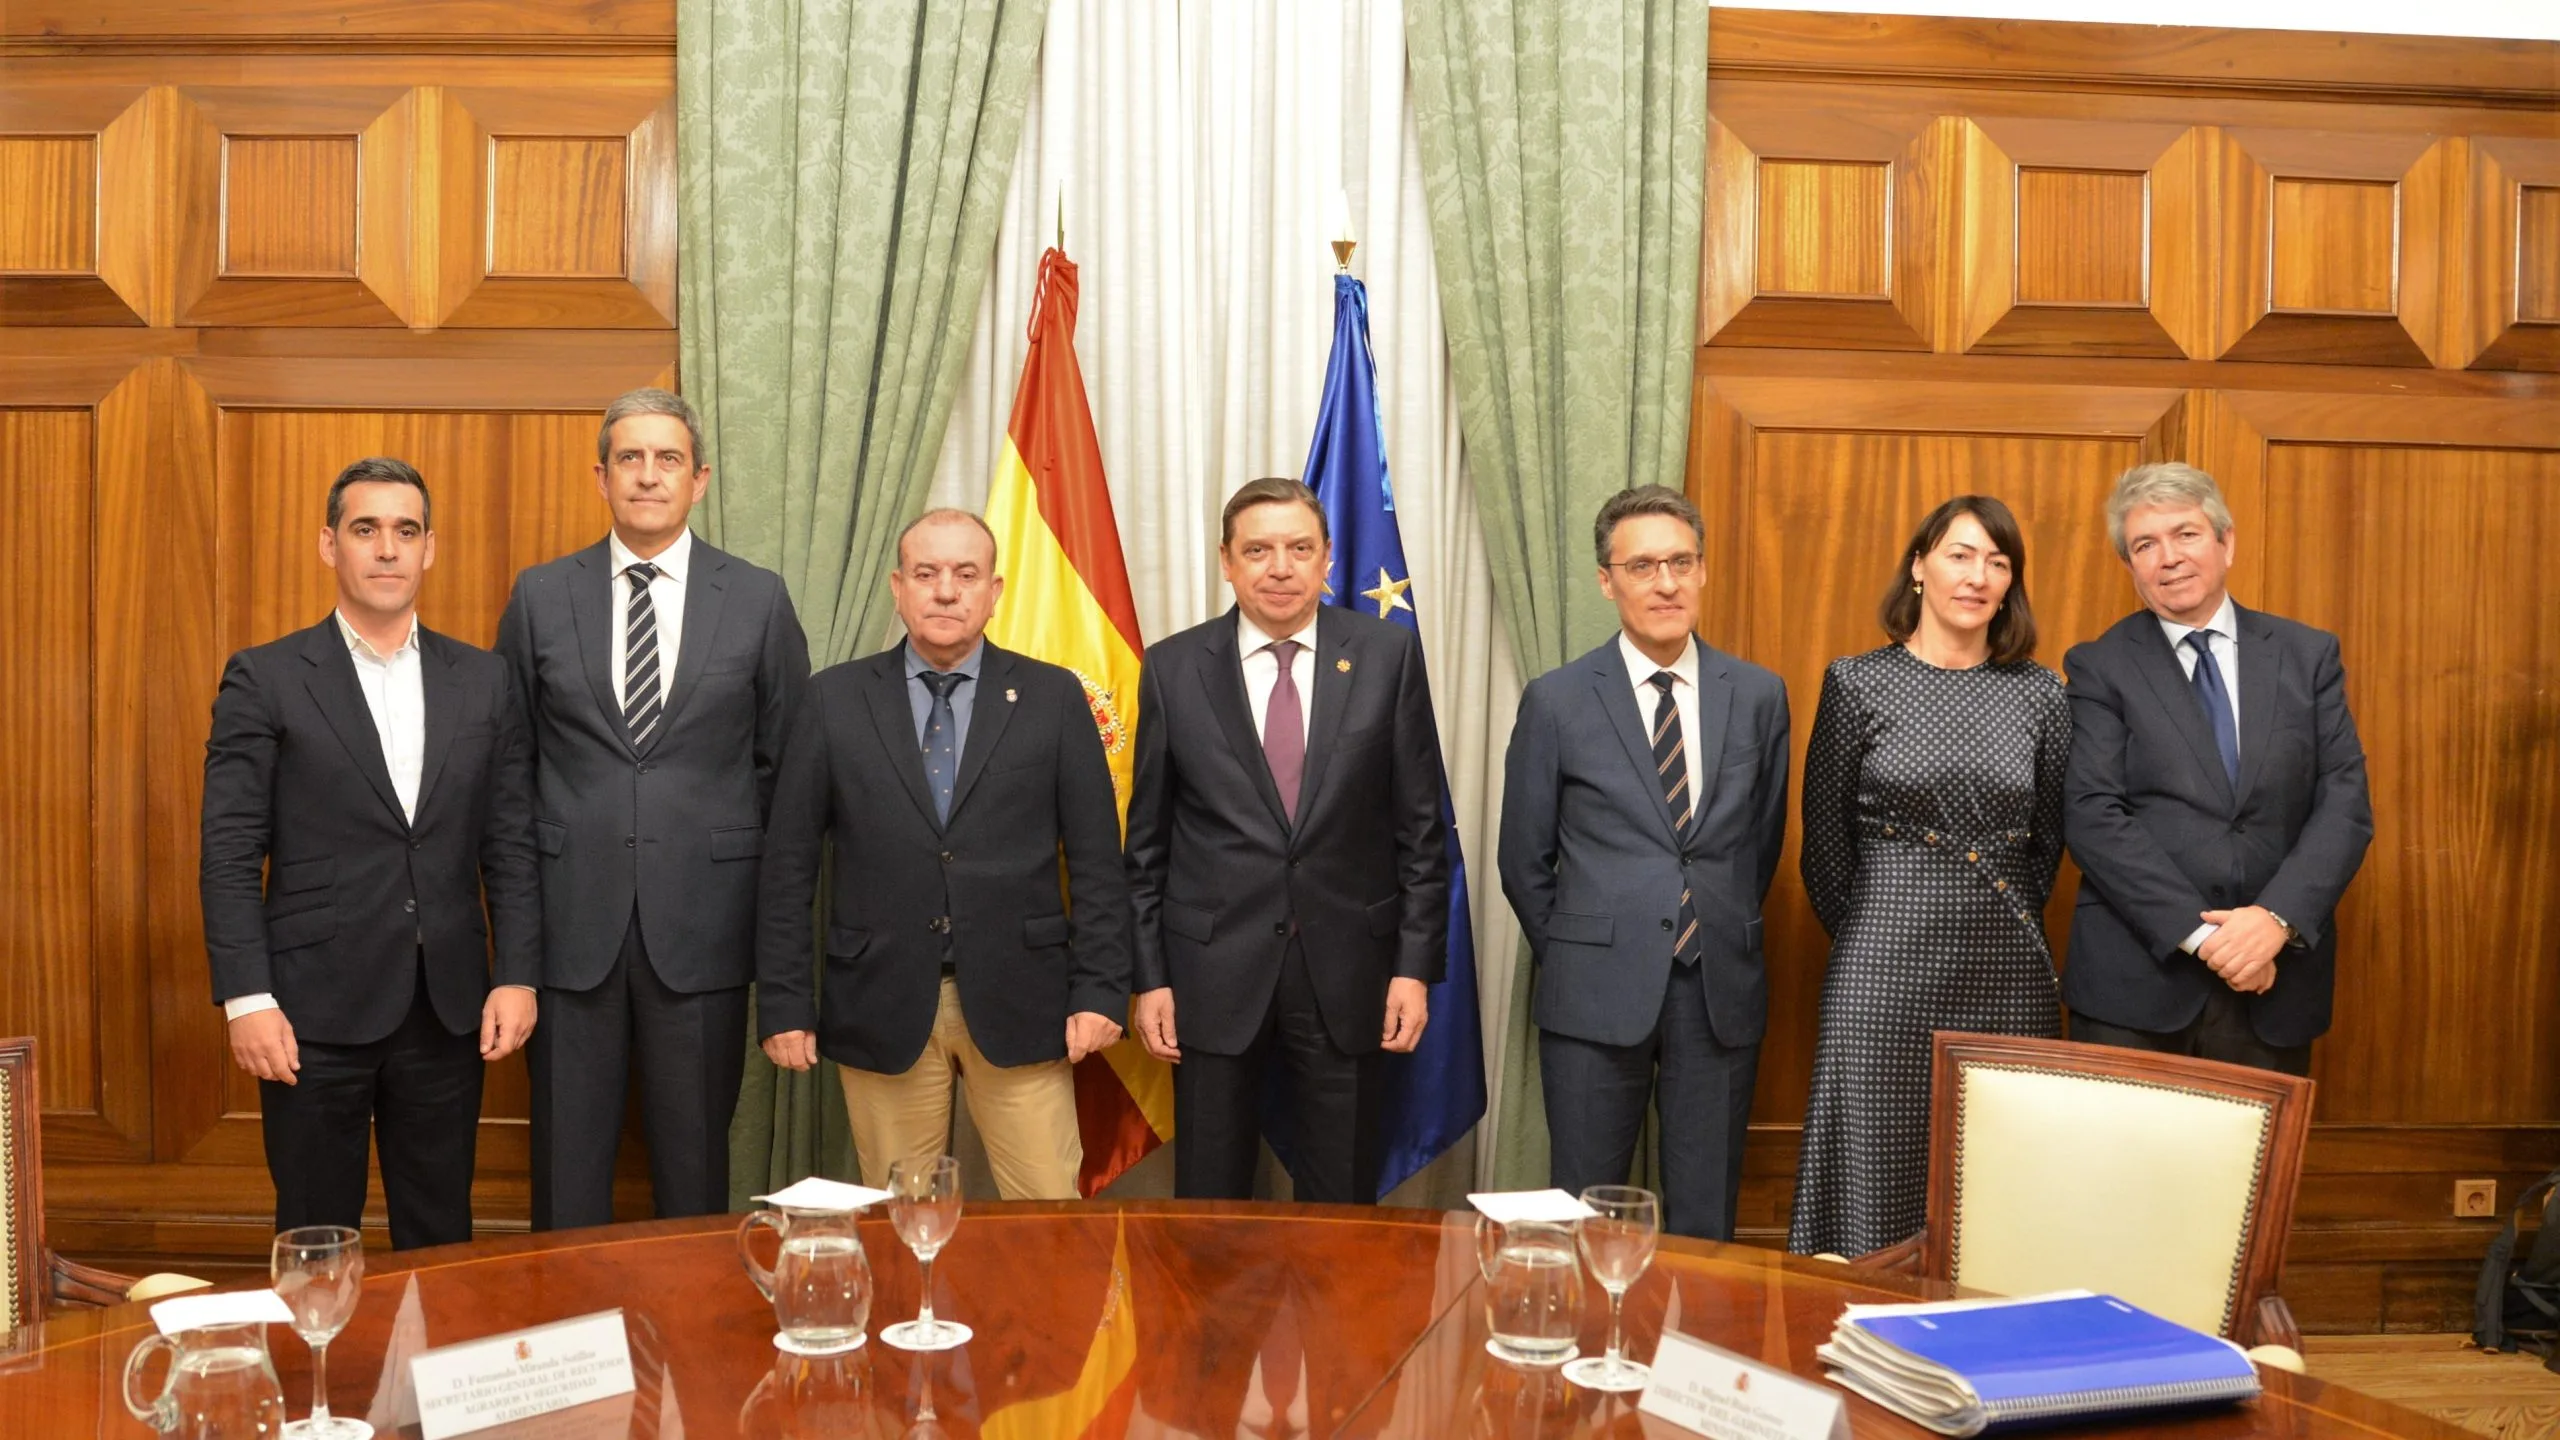 El ministro de Agricultura se reúne con la Federación Española de Caza para avanzar en la promoción y defensa de la caza sostenible